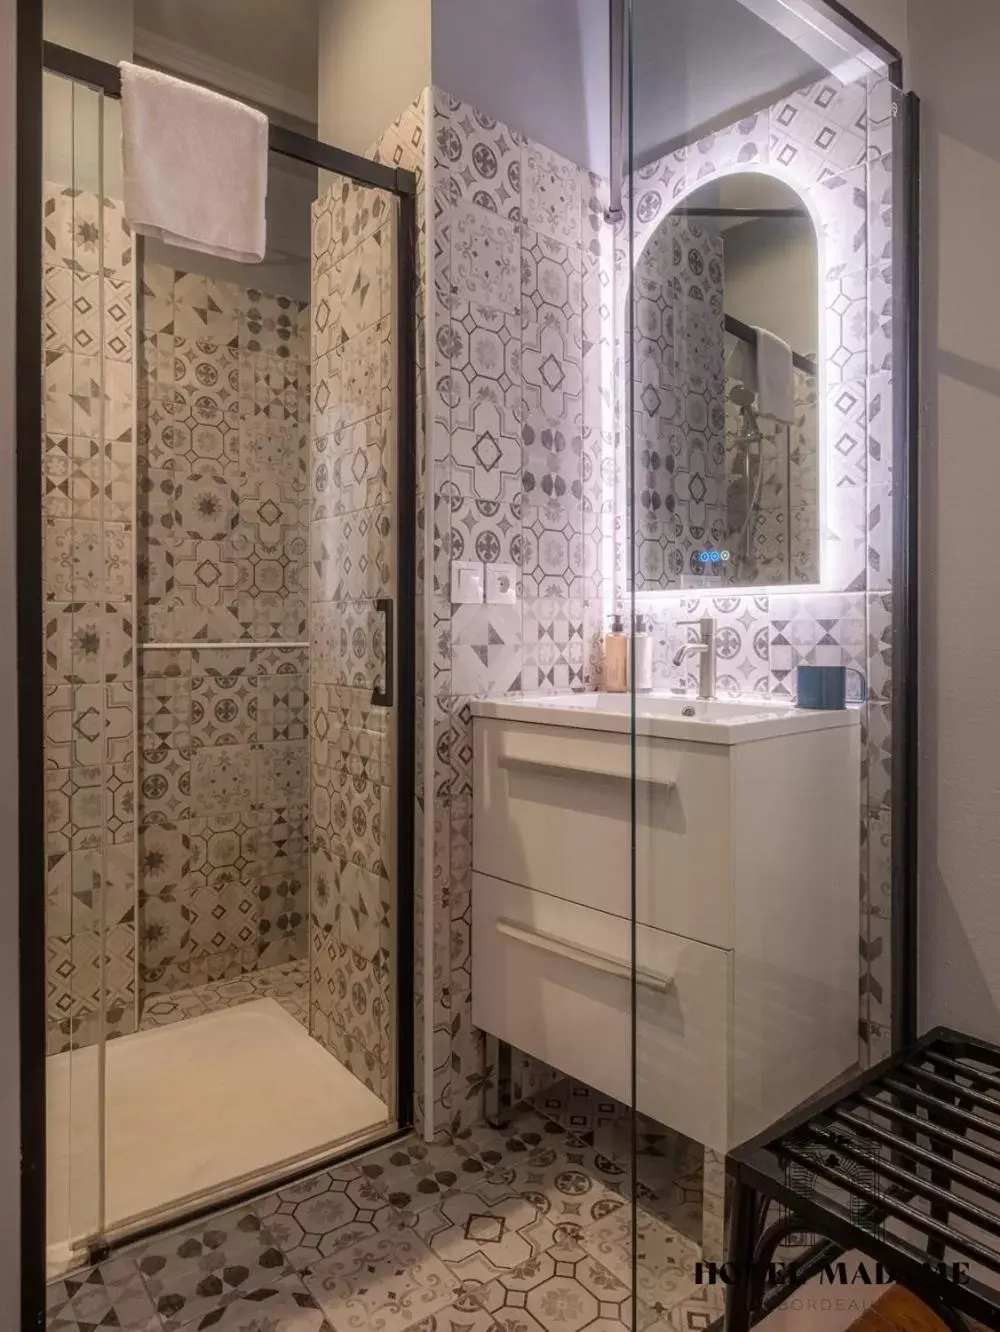 Shower, Bathroom in Hôtel Madame